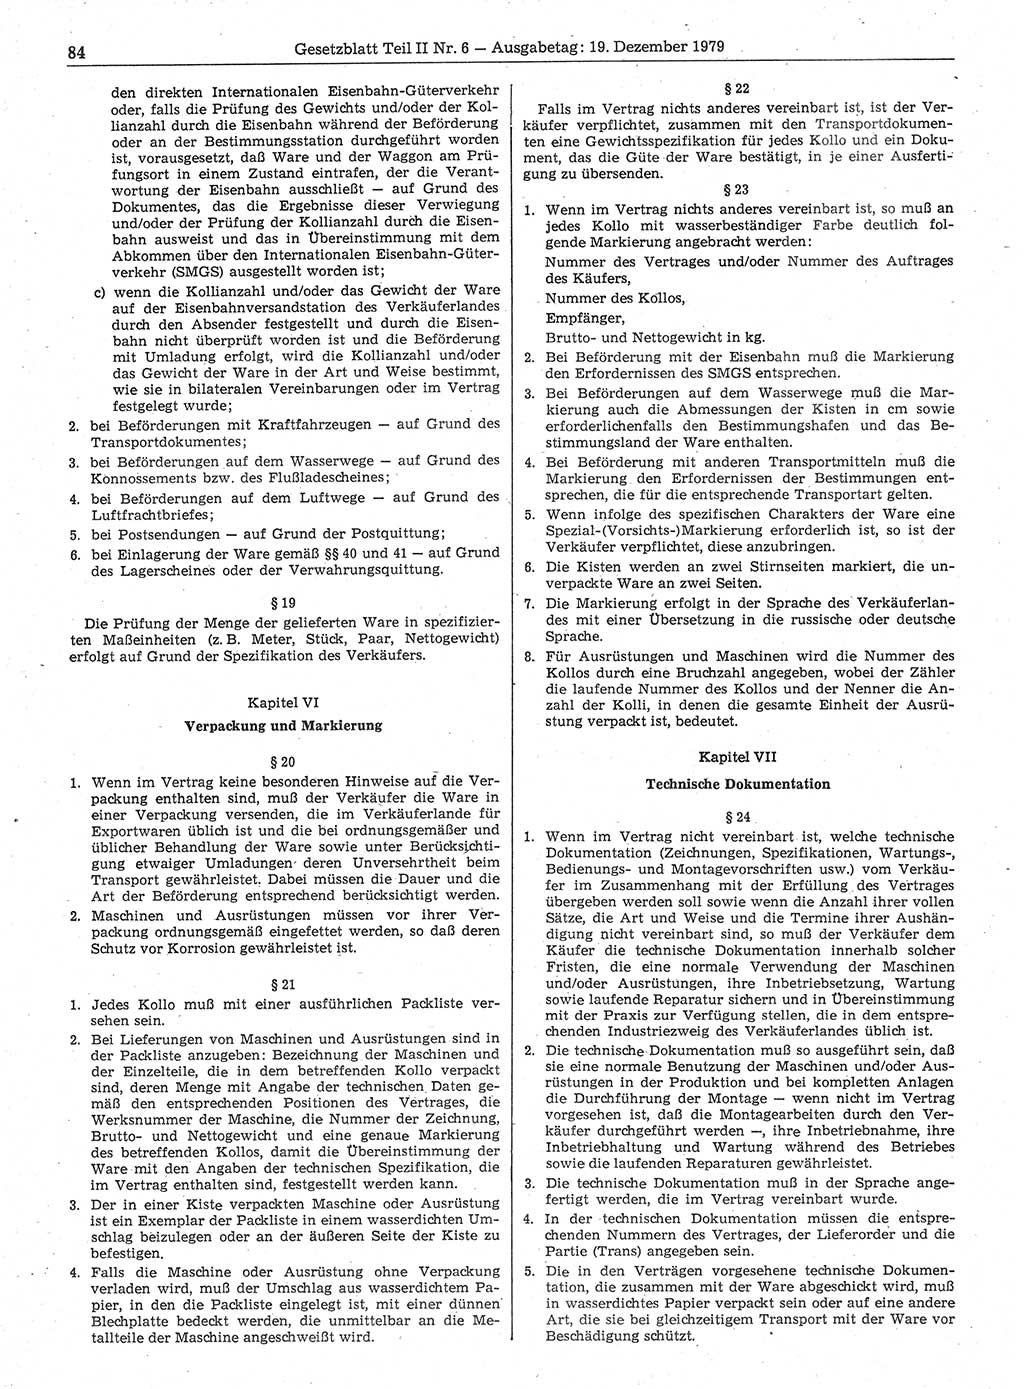 Gesetzblatt (GBl.) der Deutschen Demokratischen Republik (DDR) Teil ⅠⅠ 1979, Seite 84 (GBl. DDR ⅠⅠ 1979, S. 84)